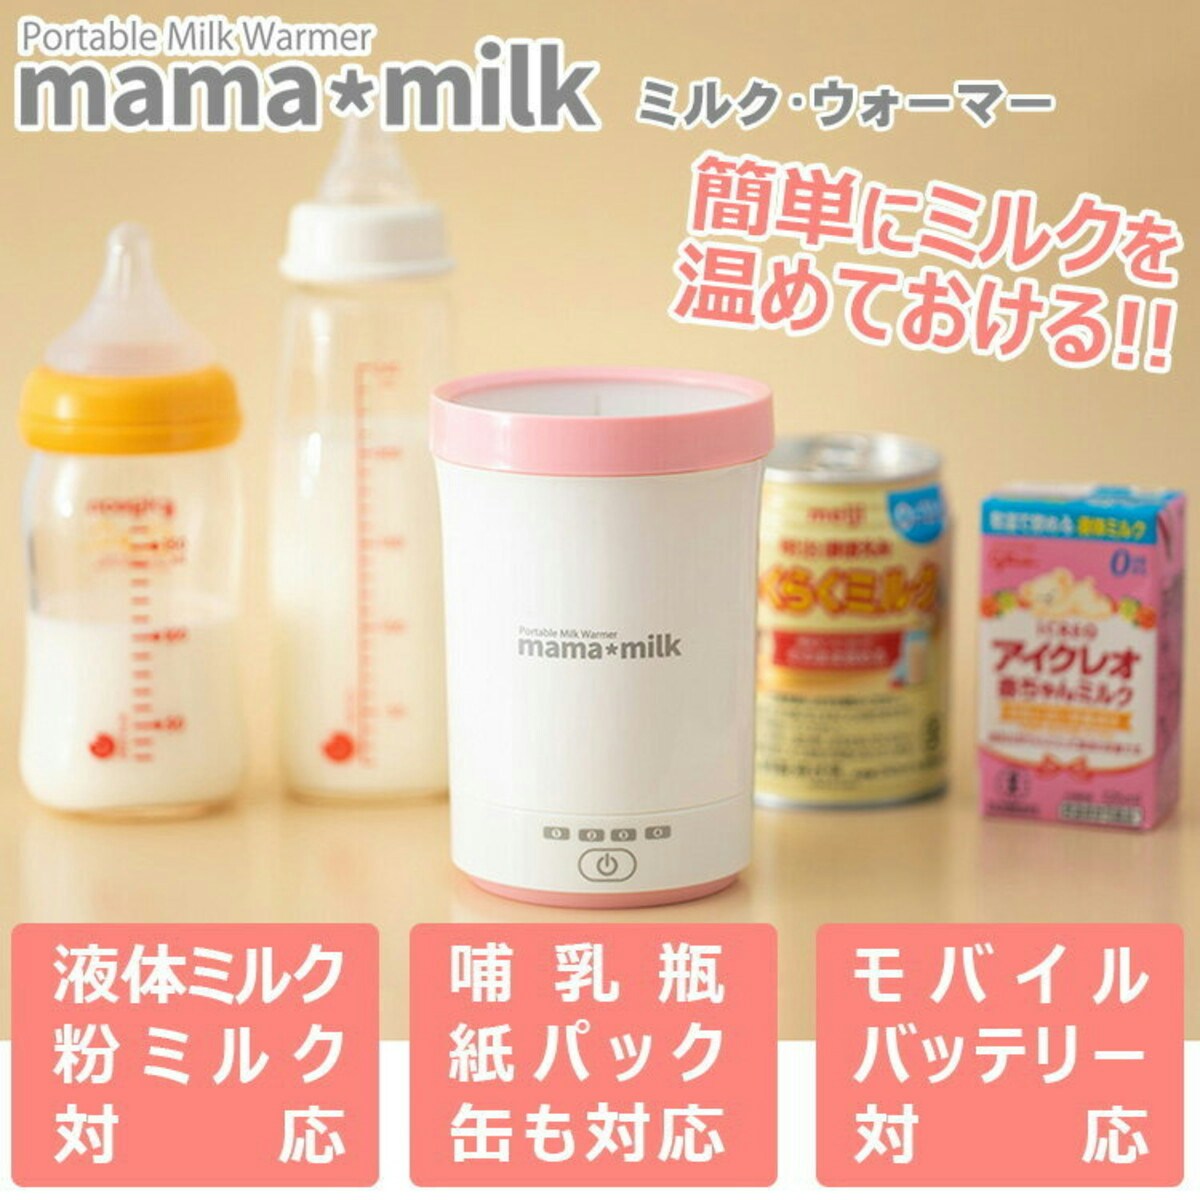 ミルクウォーマー ママミルク mama milk